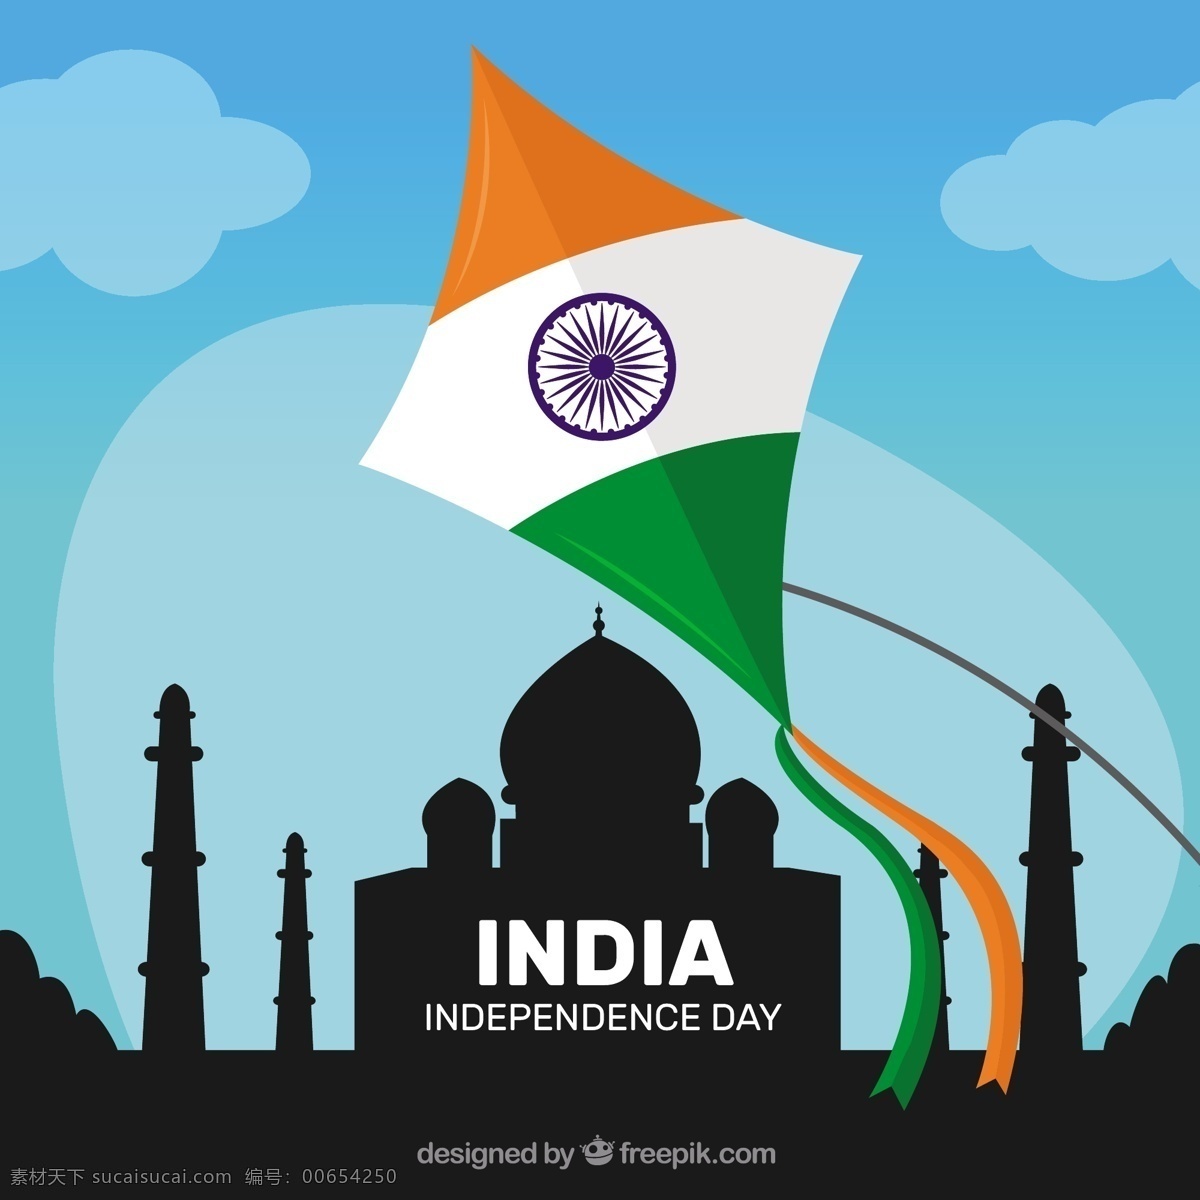 印度 风筝 泰姬陵 剪影 背景 国旗 节日 和平 印度国旗 国家 自由 爱国 独立 脉轮 民主 民族